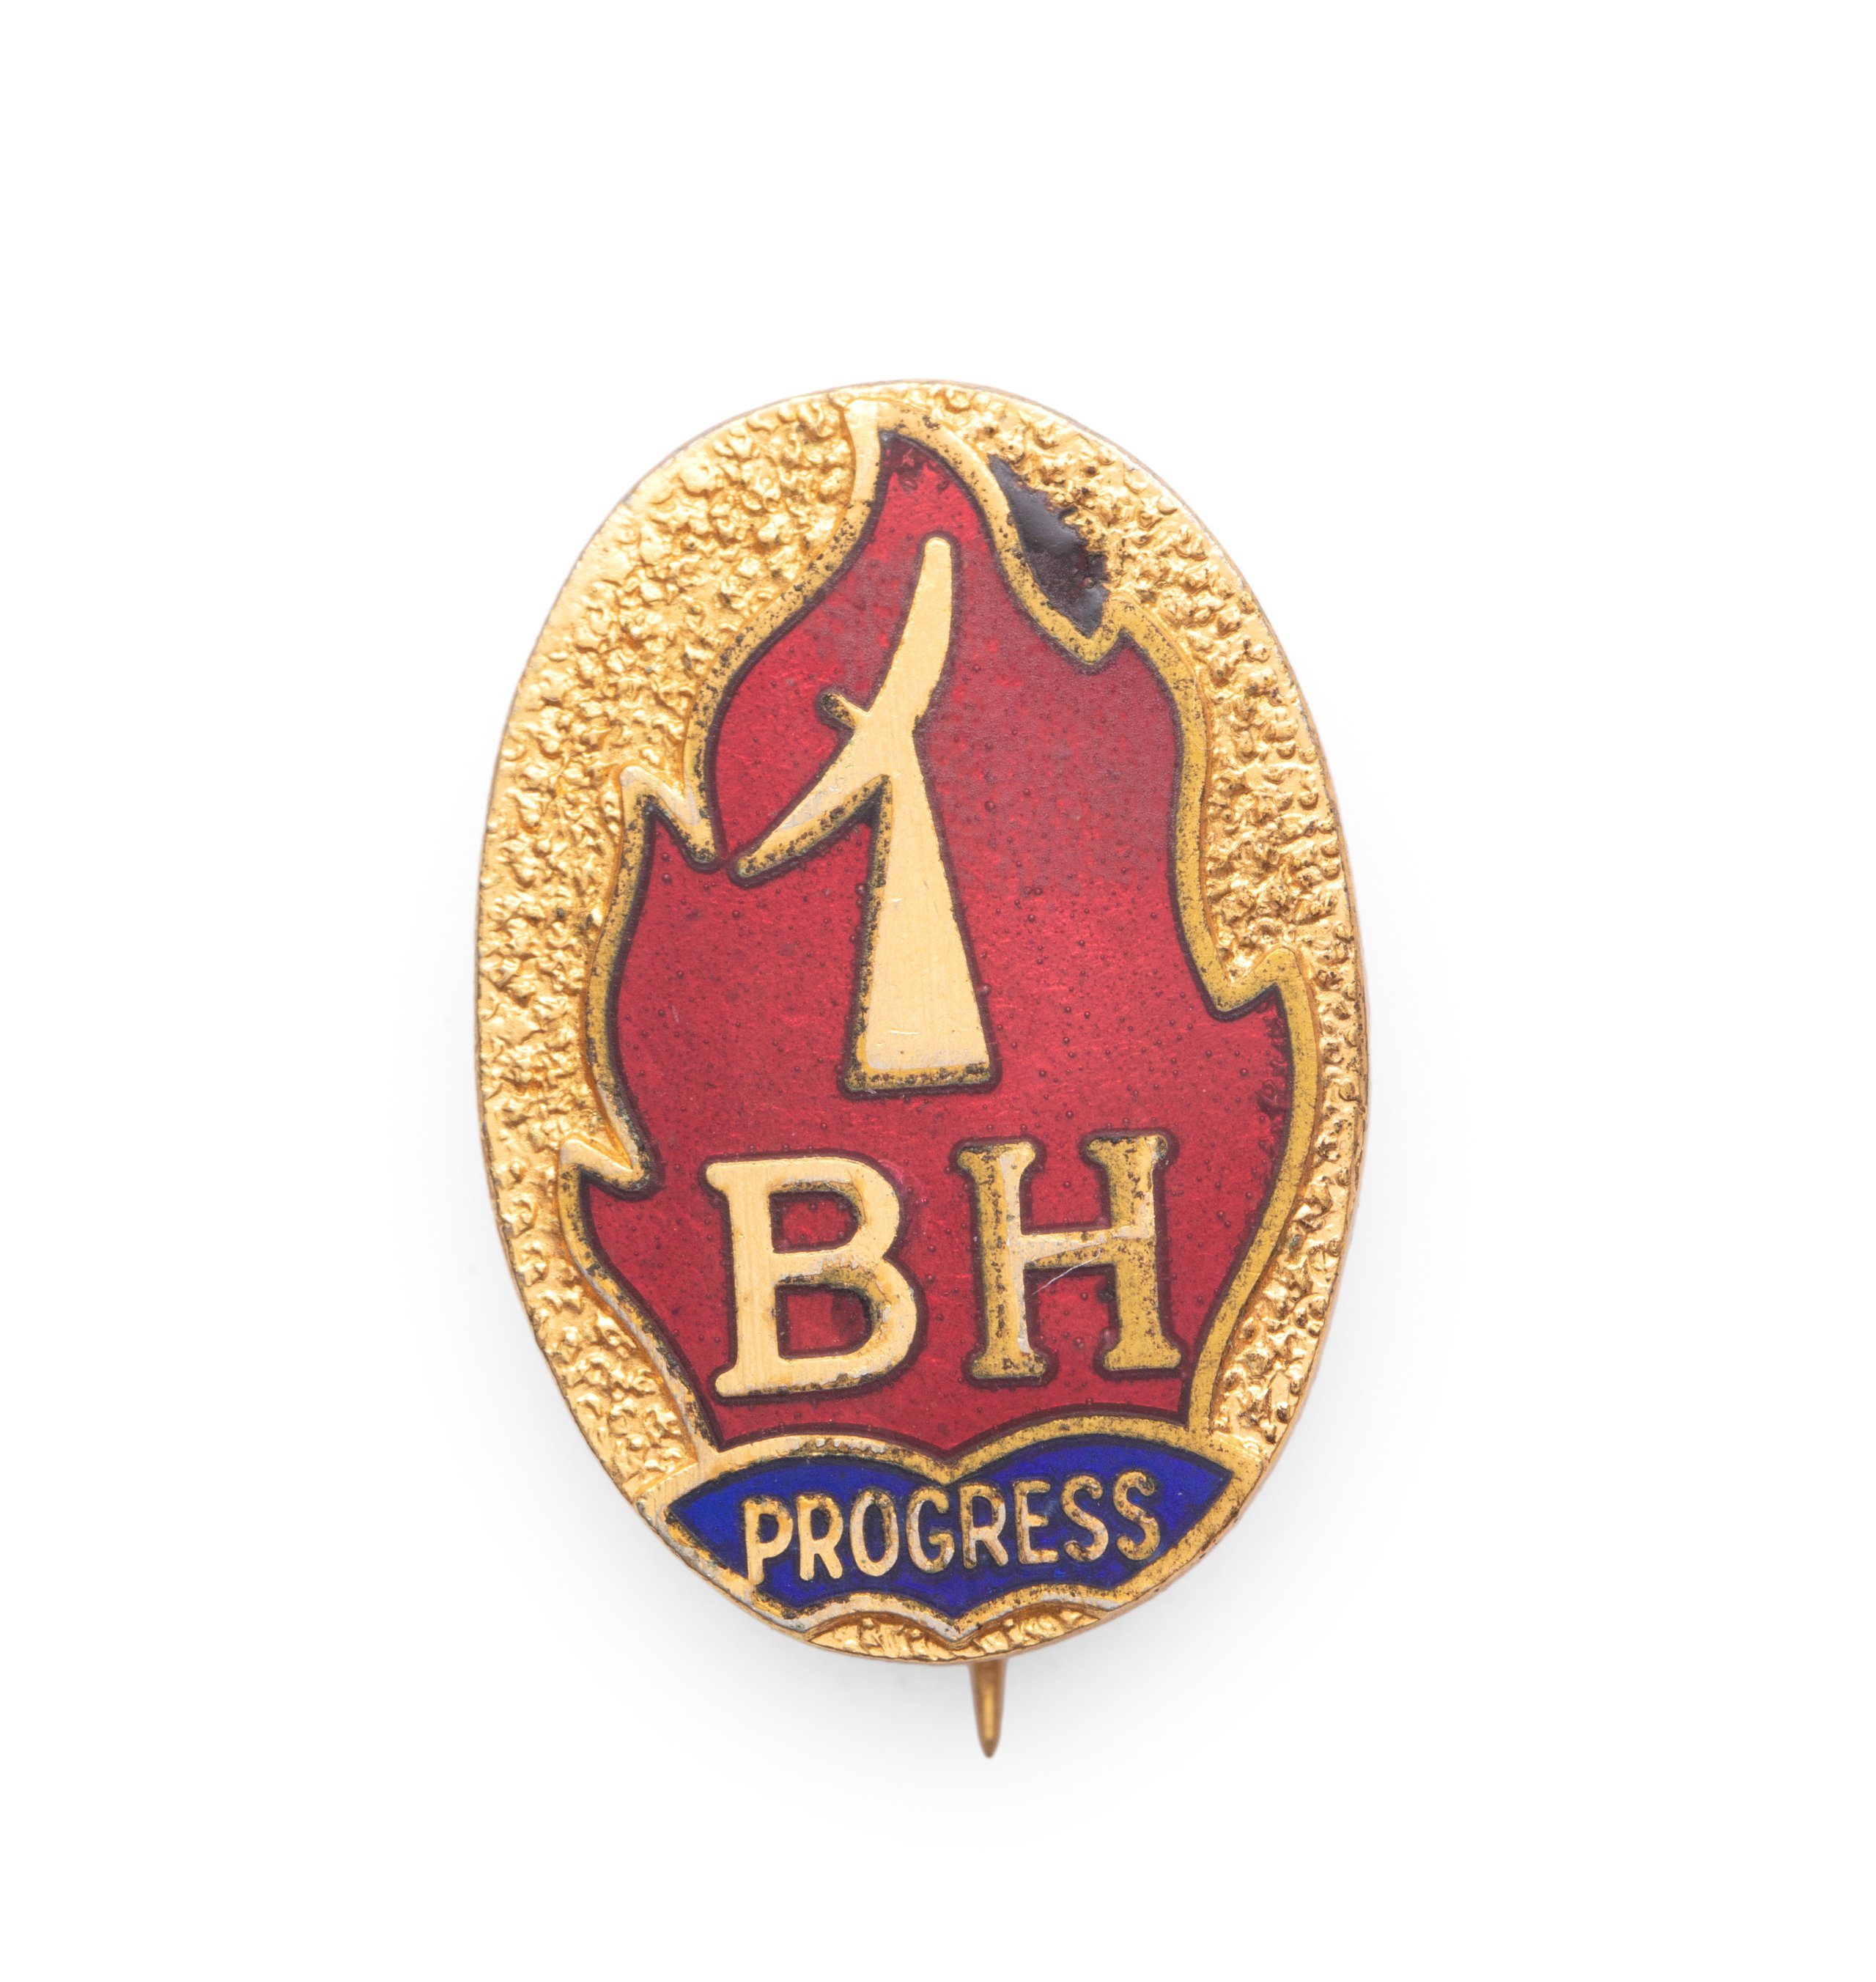 'Progress' school badge